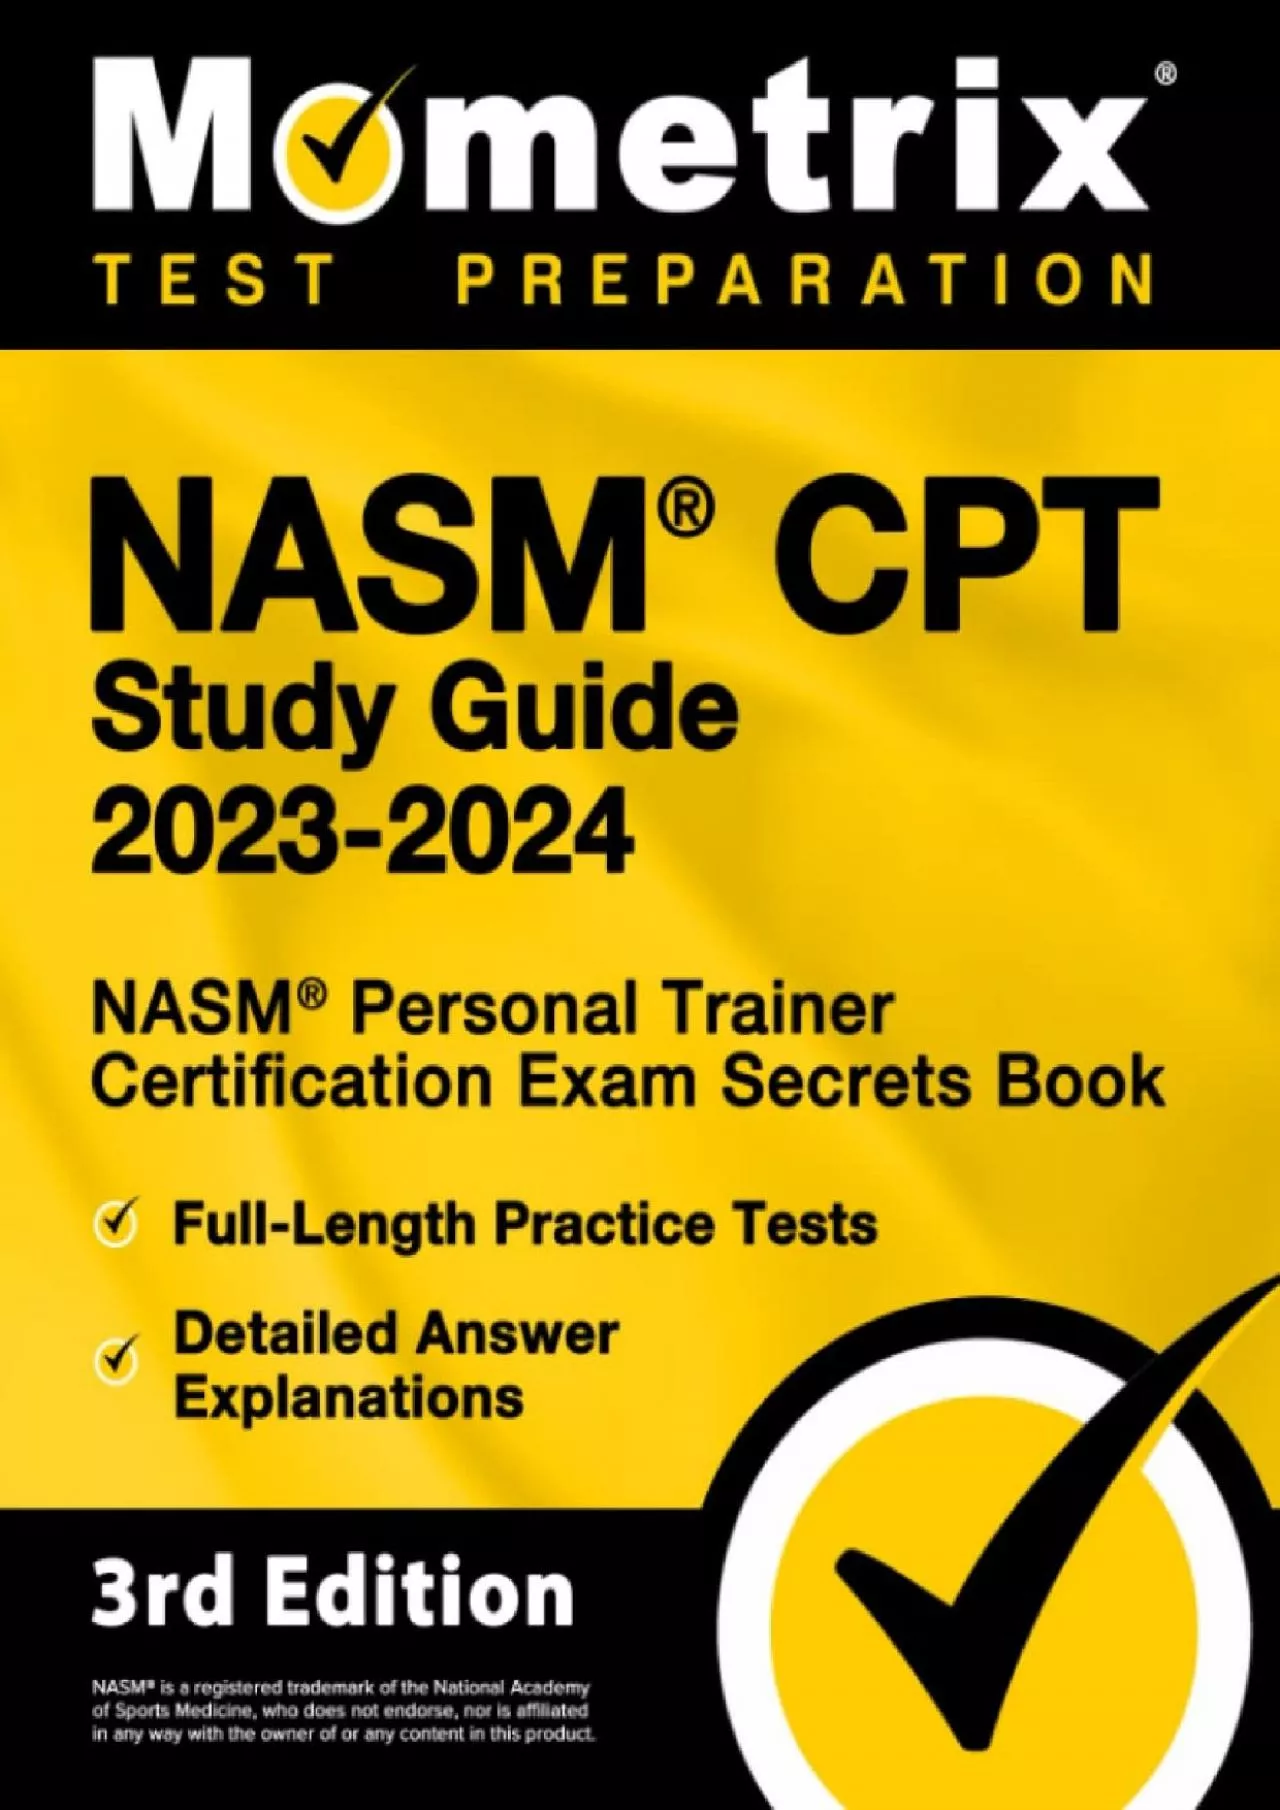 [EBOOK] NASM CPT Study Guide 2023-2024 - NASM Personal Trainer Certification Exam Secrets